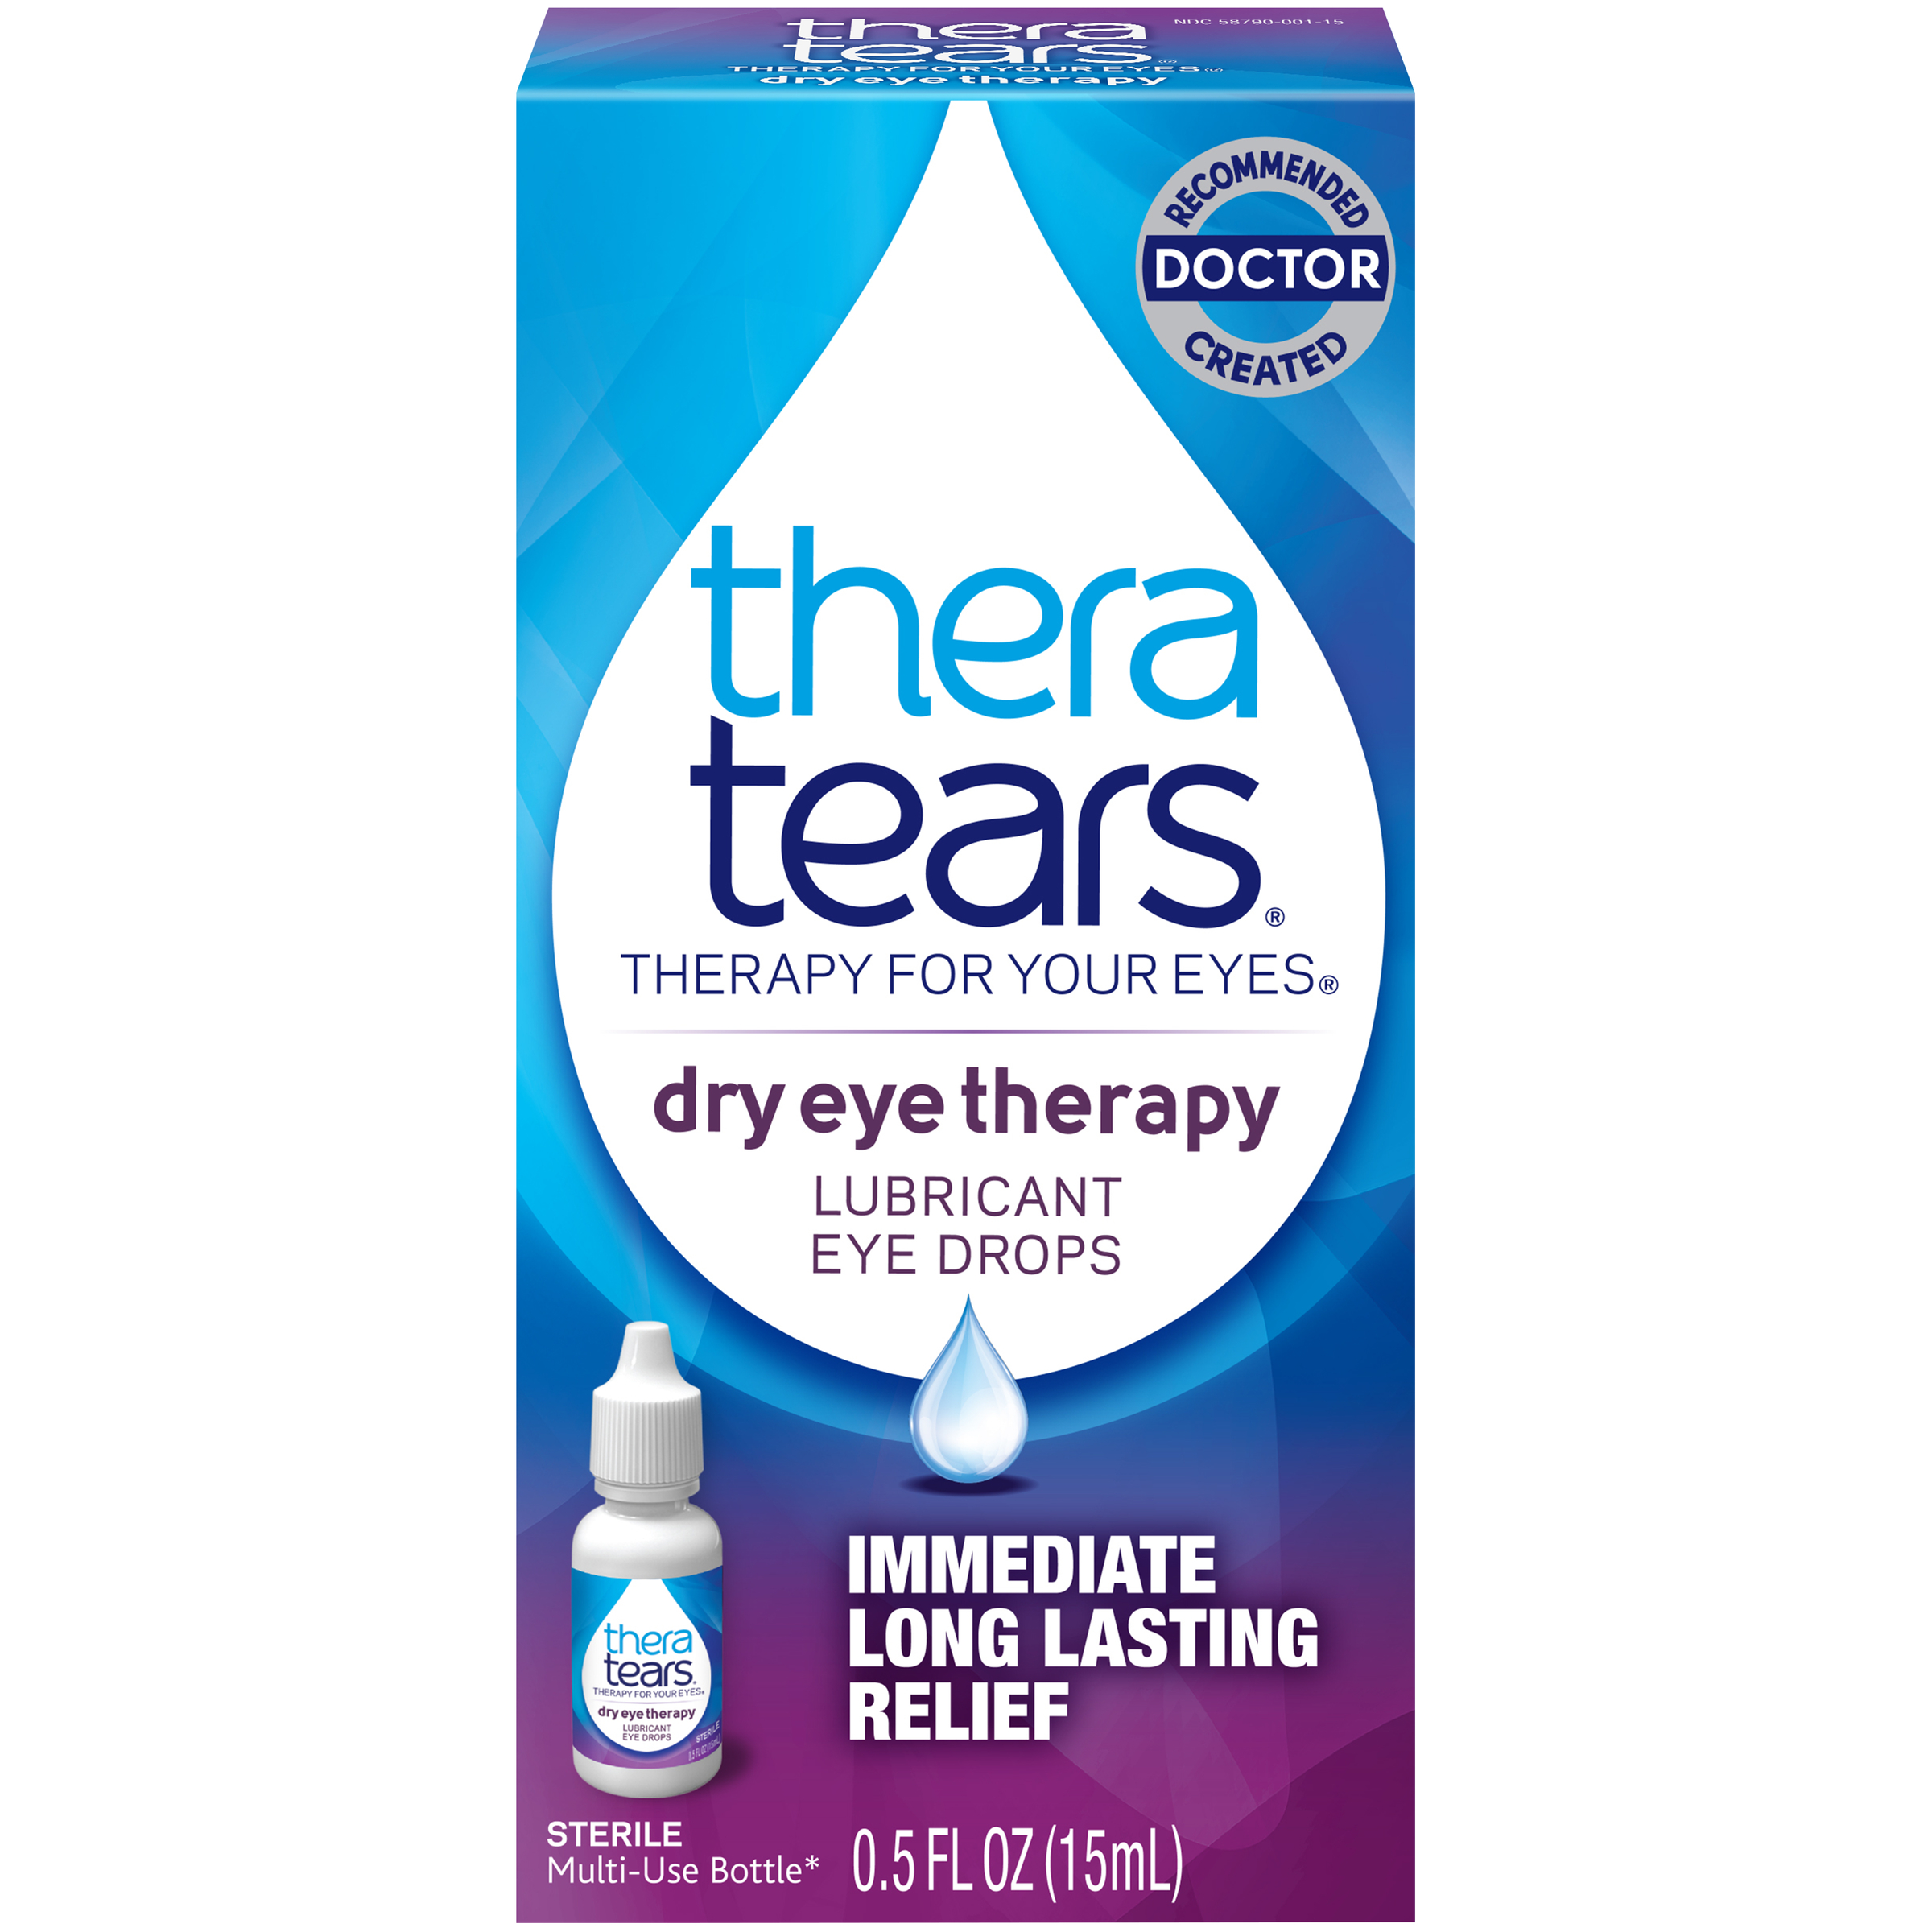 TheraTears Eye Drops, Lubricant, 0.5 fl oz (15 ml)